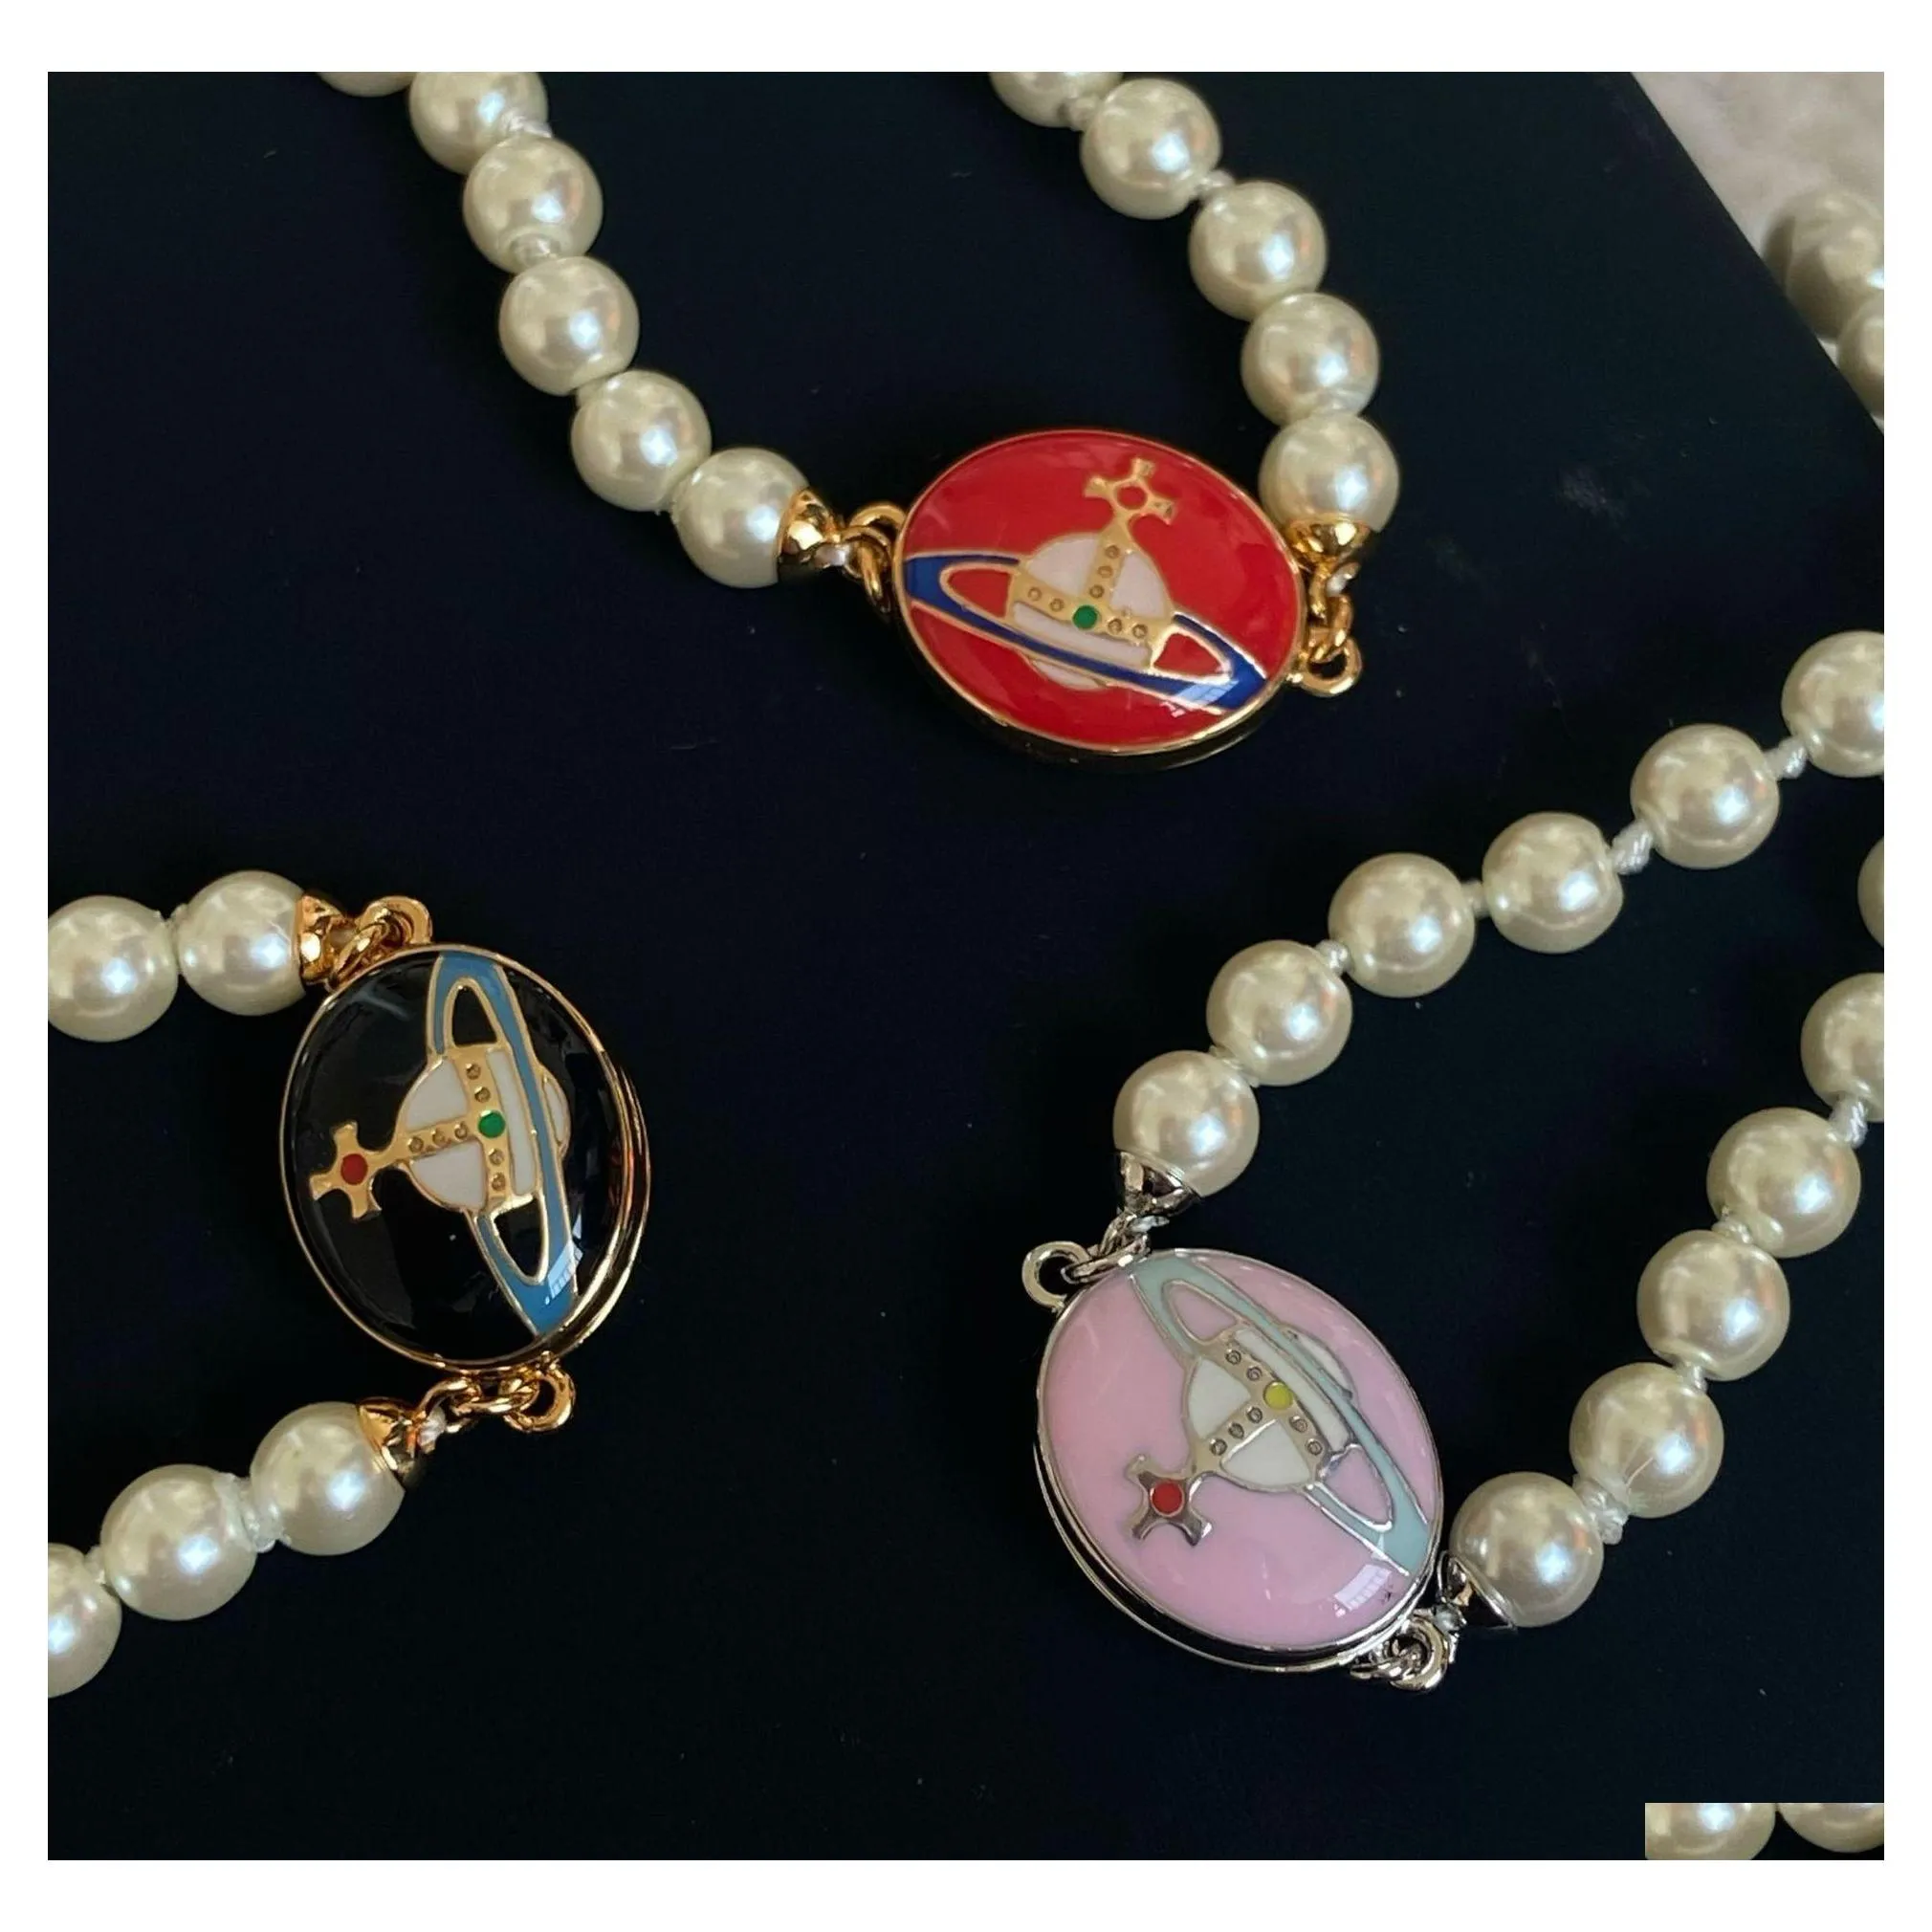 H￤nge halsband kvinnor emaljmagnet sp￤nne p￤rlhalsband klavikelkedja planet designer smycken droppleverans h￤nge dhxle